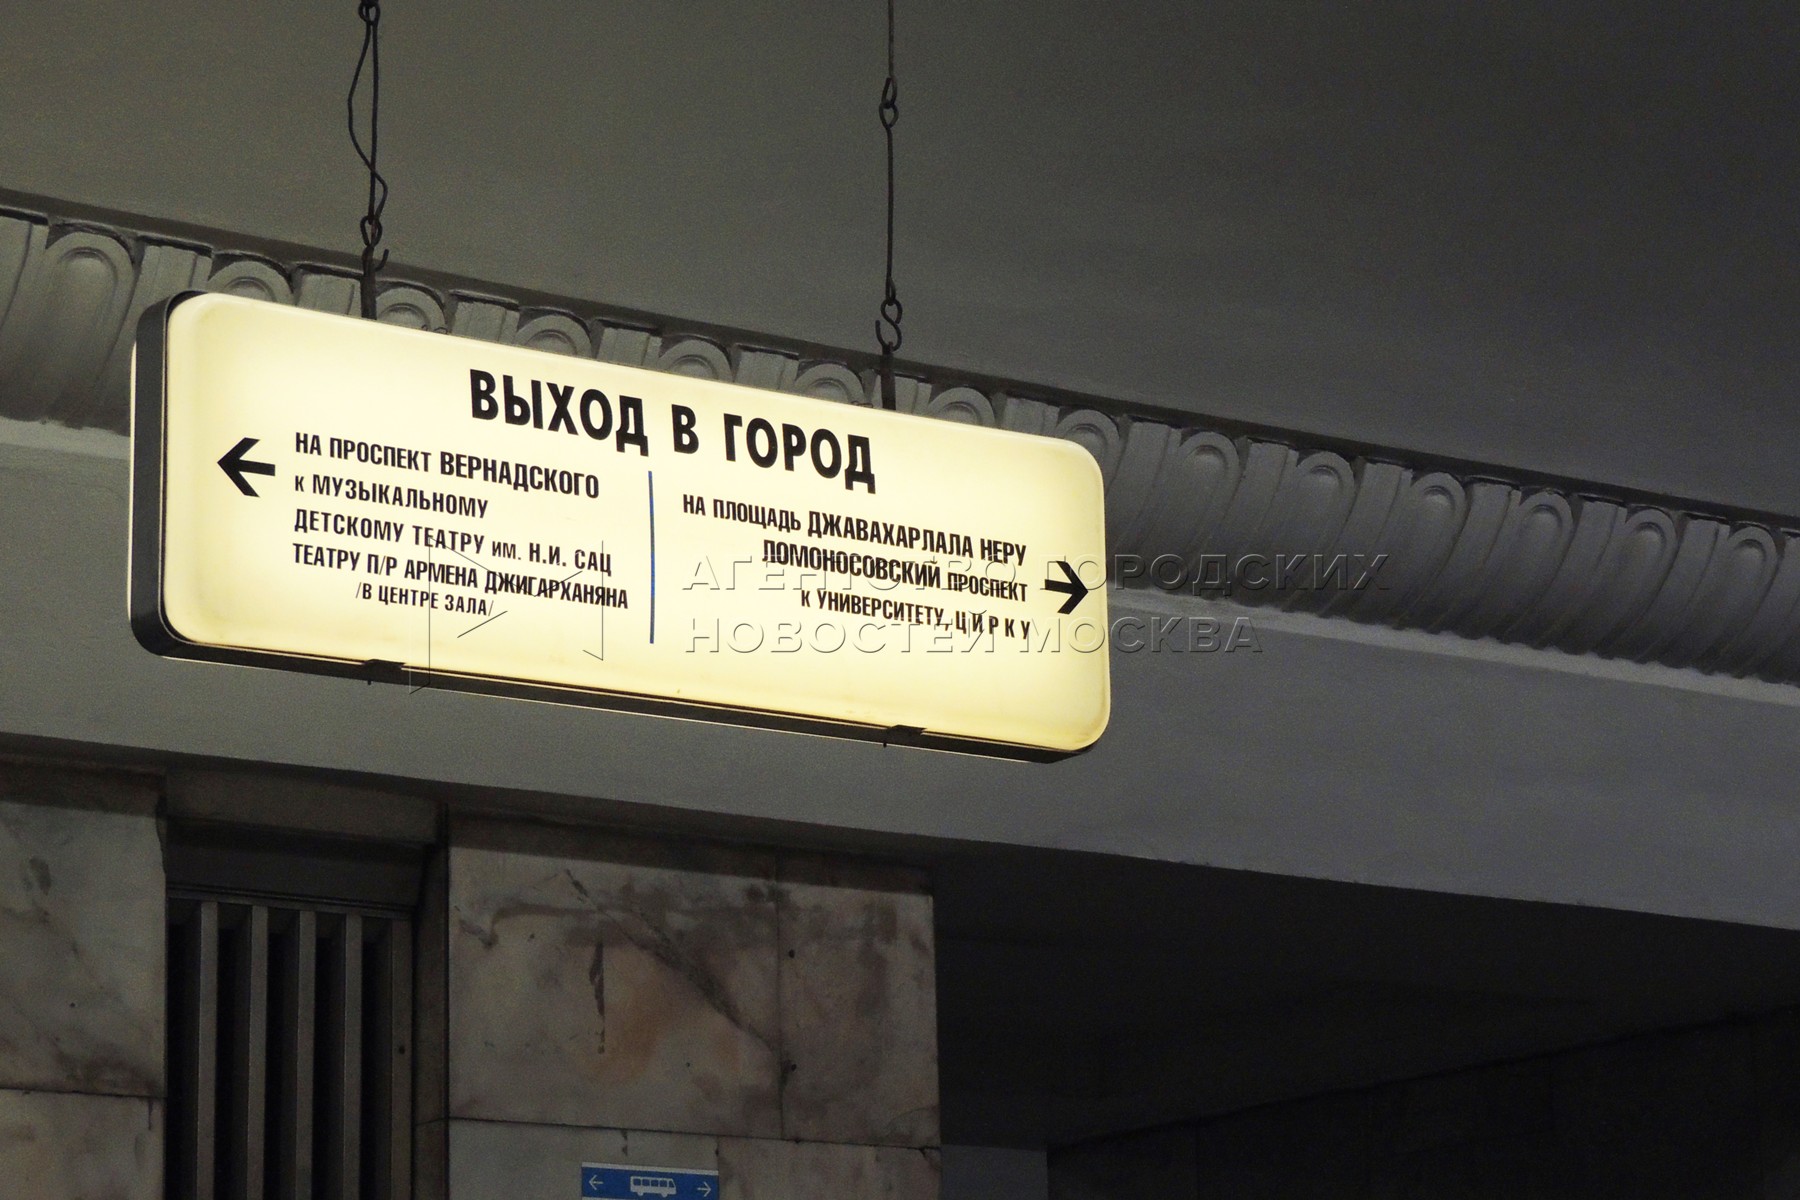 выходы из метро в москве